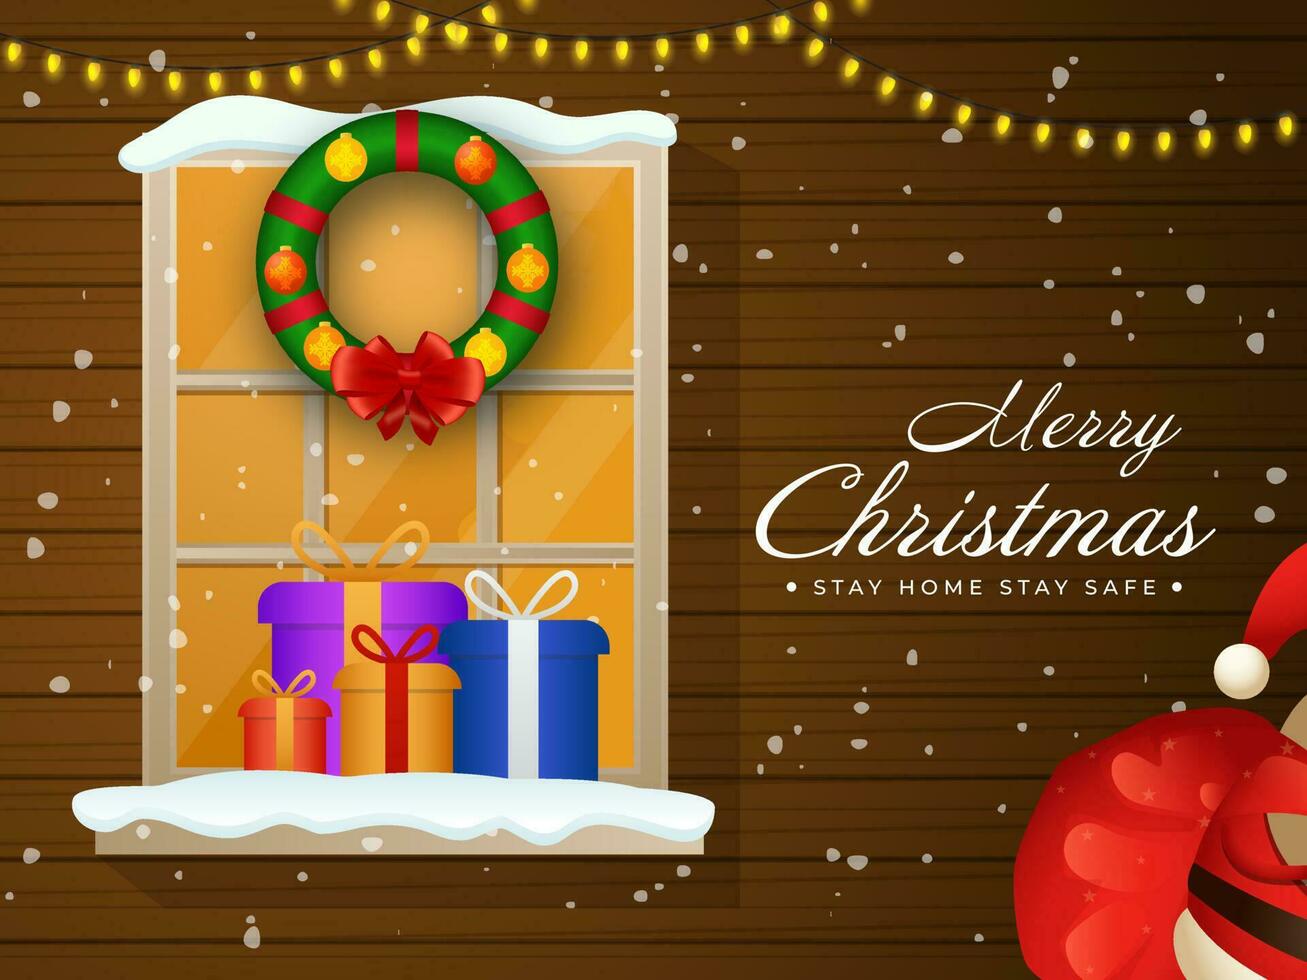 Marrone di legno nevicata sfondo con illuminazione ghirlanda, finestra, arredamento ghirlanda, regalo scatole su il occasione di allegro Natale restare casa e restare sicuro. vettore